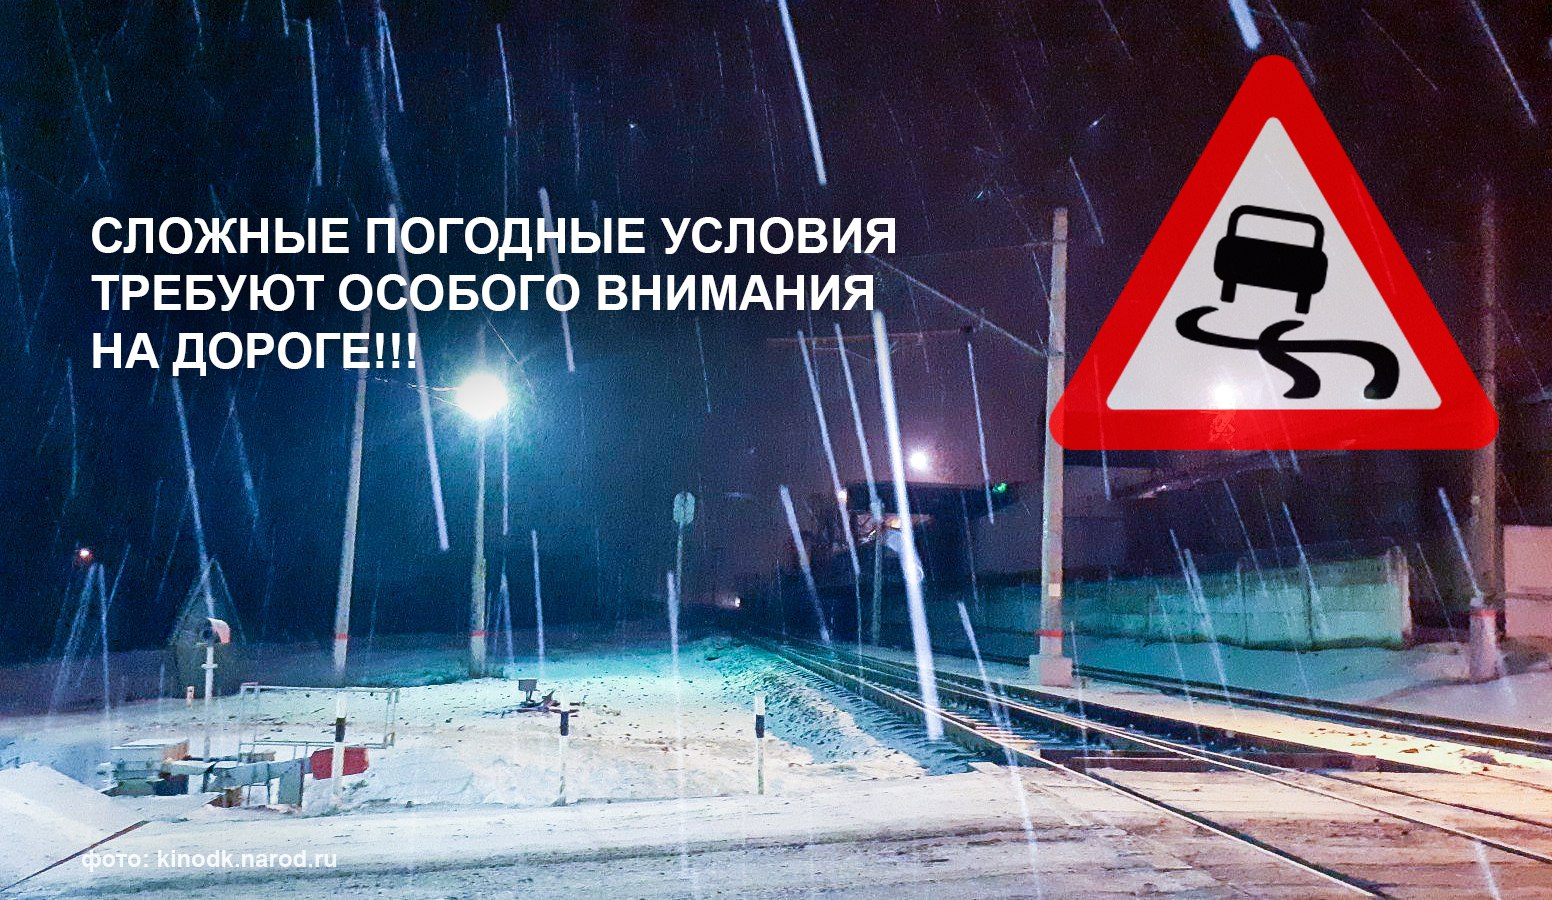 Госавтоинспекция Ребрихинского района обращается к участникам дорожного движения.